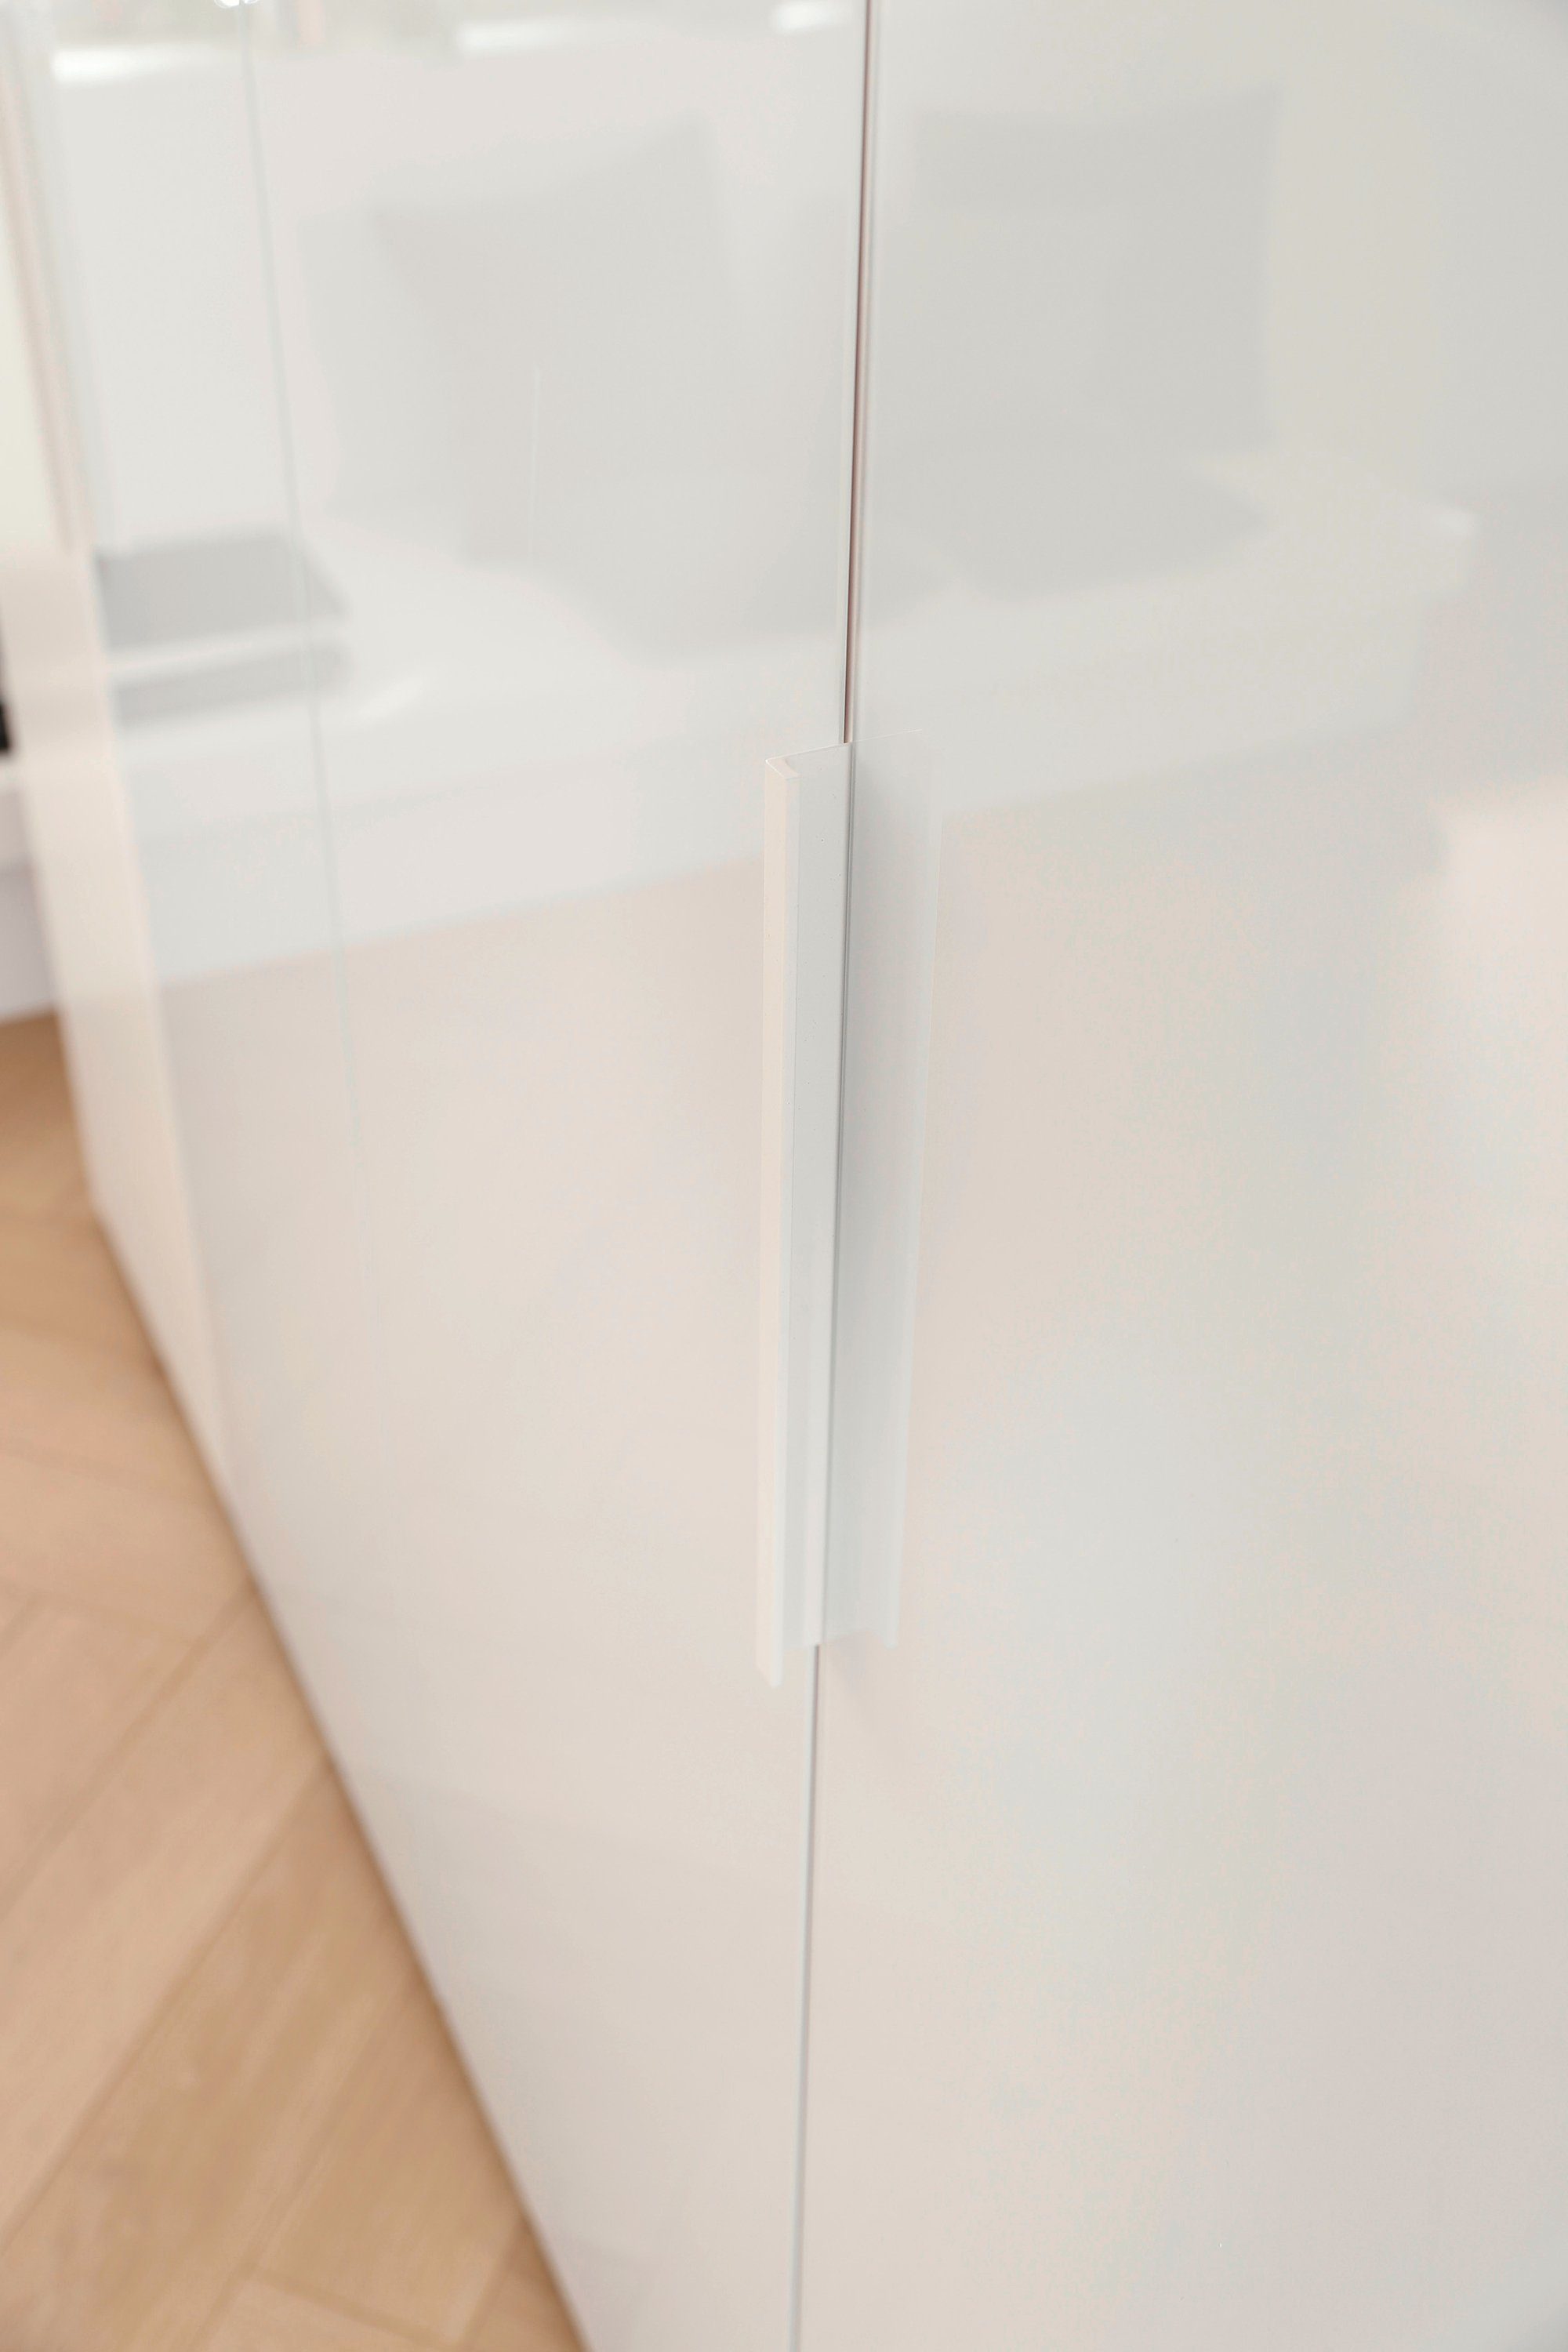 rauch Drehtürenschrank Fena in Weiß optional Außentüren Eiche umfangreicher Innenausstattung, inkl. Weiß/Glas